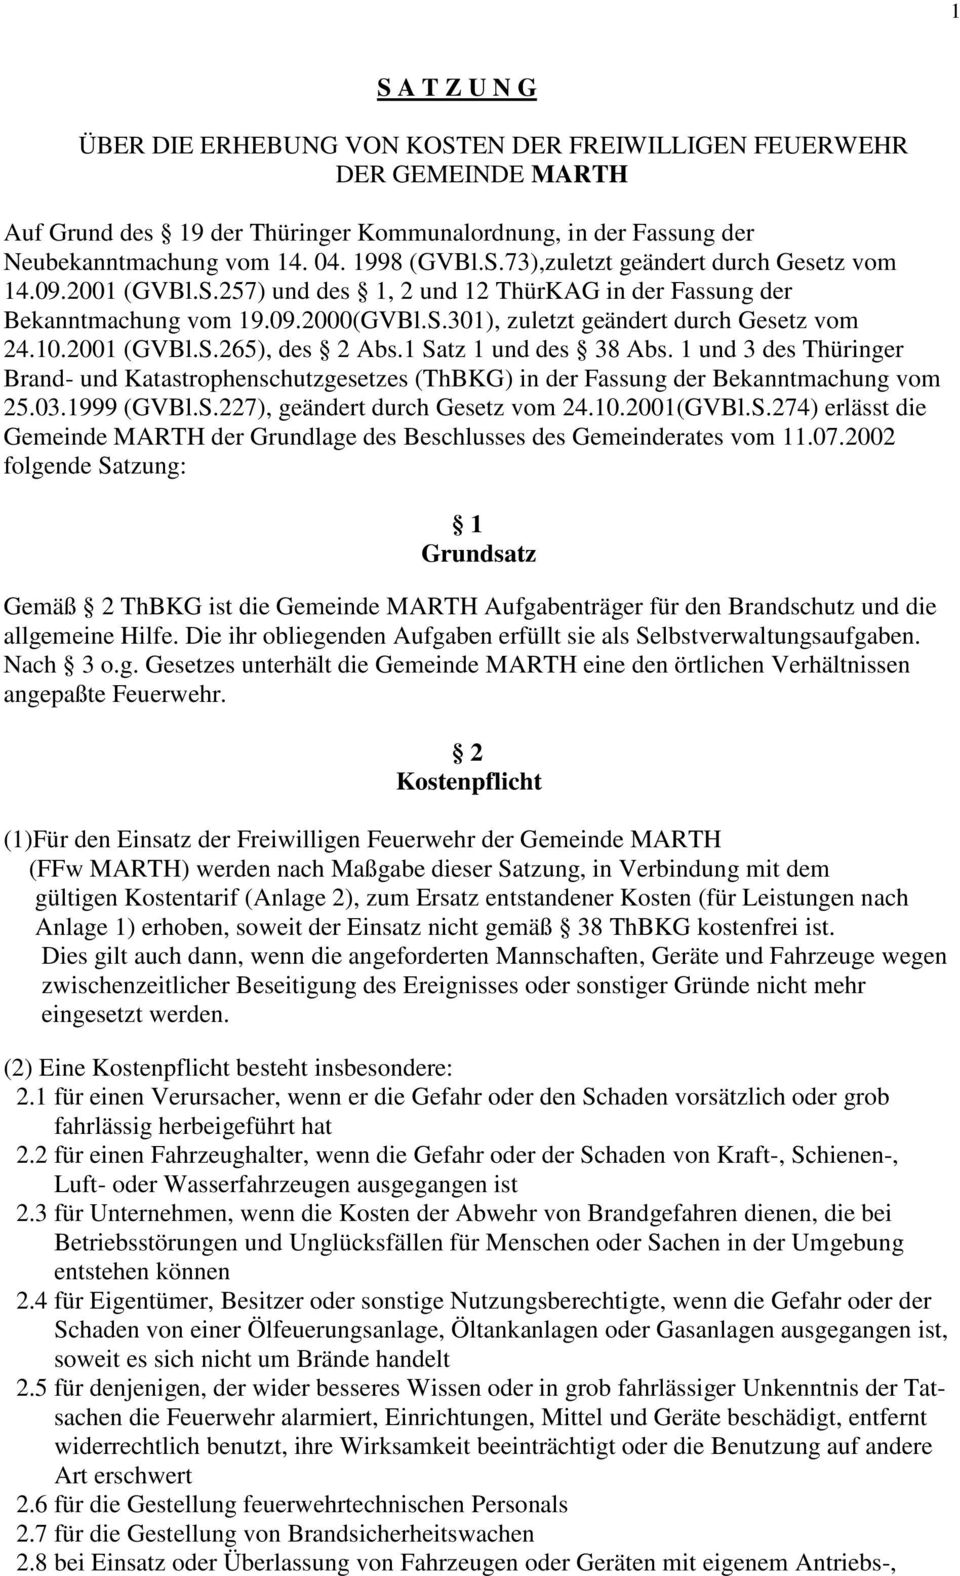 2001 (GVBl.S.265), des 2 Abs.1 Satz 1 und des 38 Abs. 1 und 3 des Thüringer Brand- und Katastrophenschutzgesetzes (ThBKG) in der Fassung der Bekanntmachung vom 25.03.1999 (GVBl.S.227), geändert durch Gesetz vom 24.